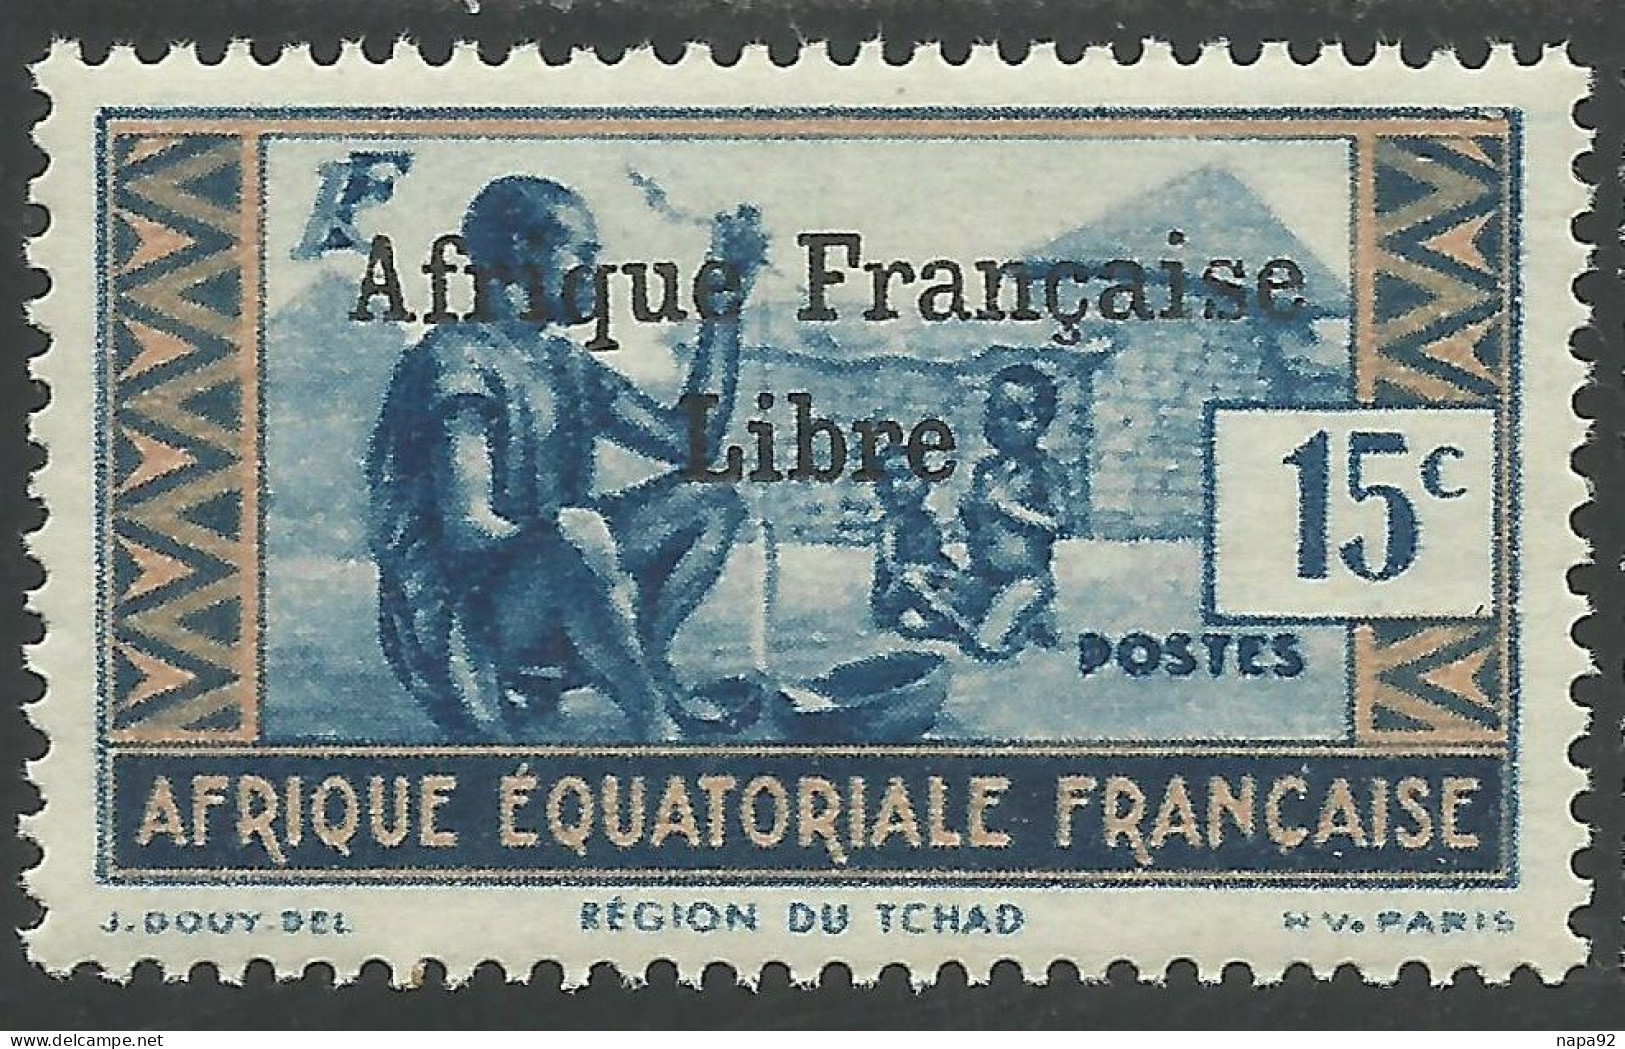 AFRIQUE EQUATORIALE FRANCAISE - AEF - A.E.F. - 1941 - YT 161** - 2ème TIRAGE - Neufs